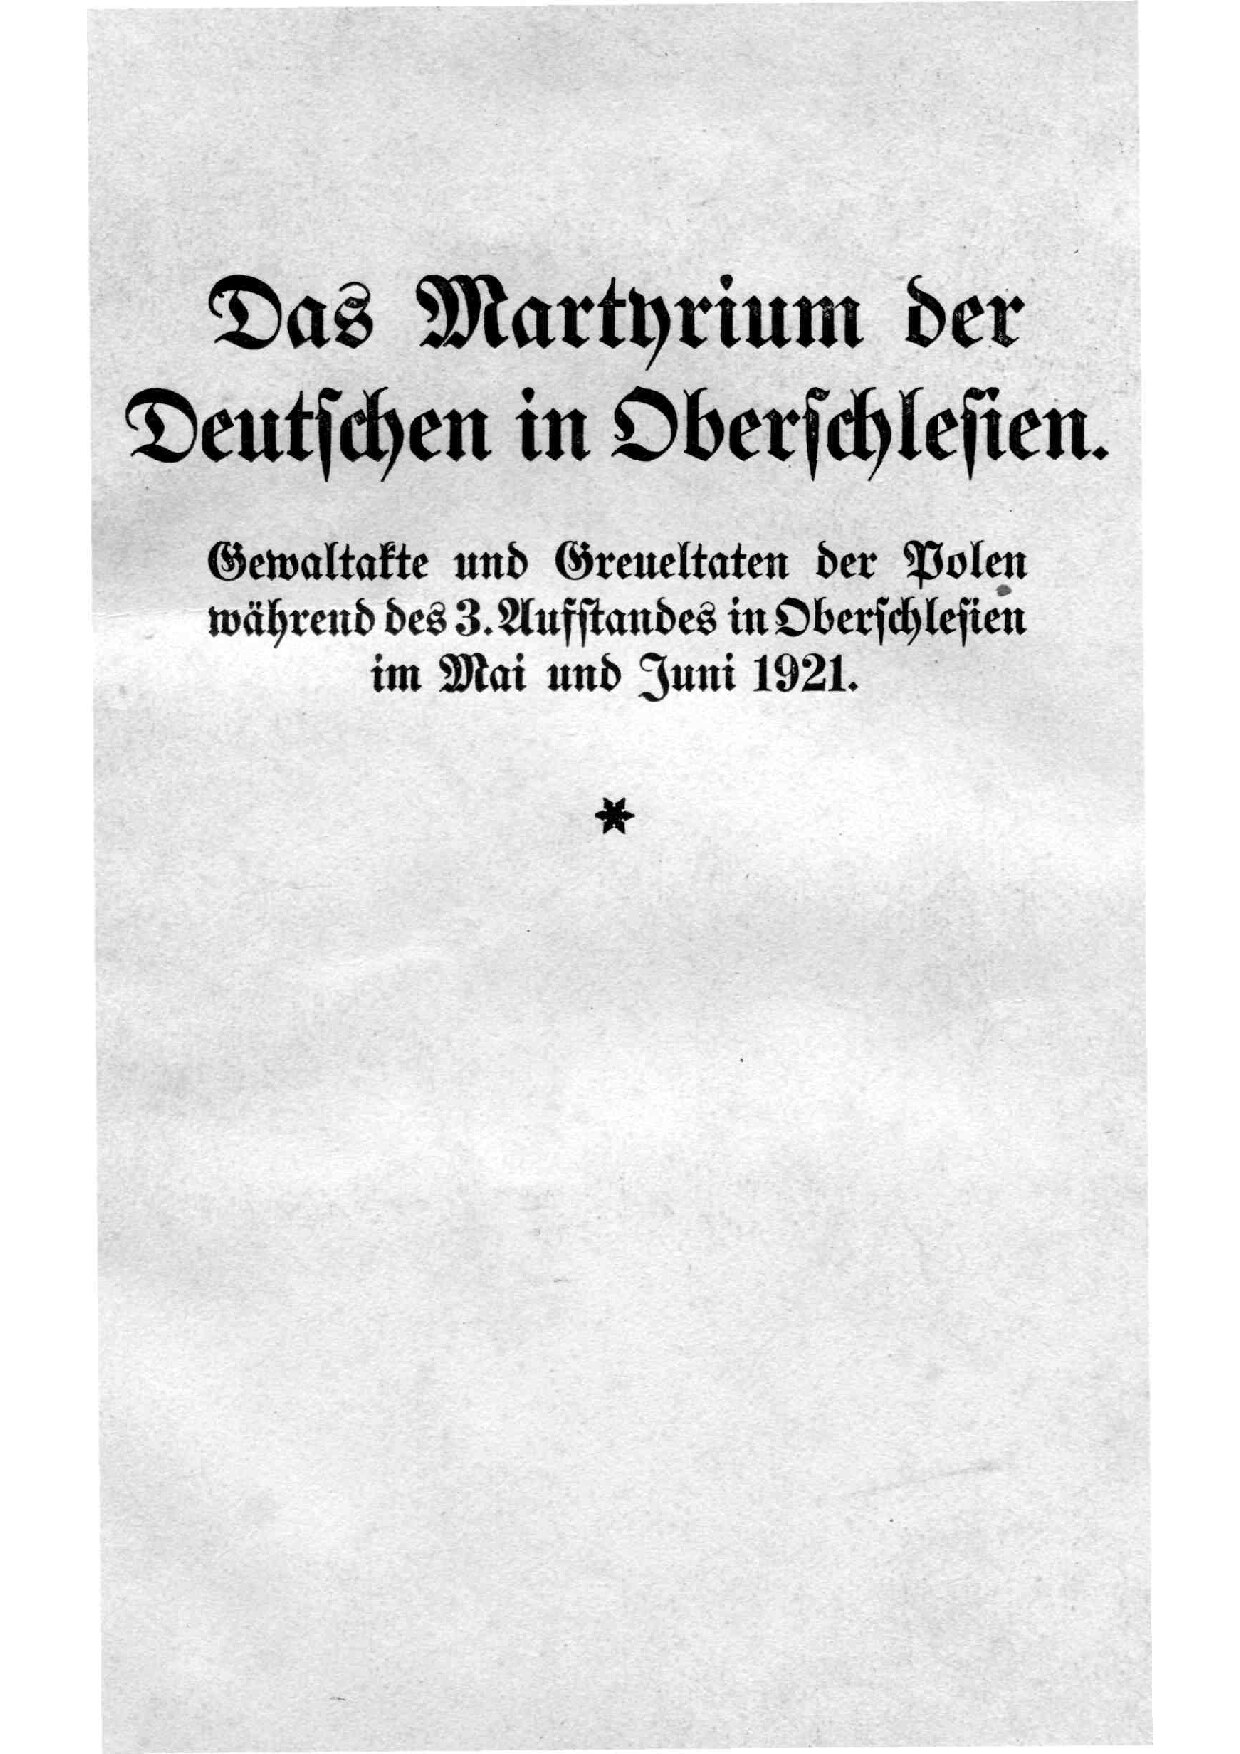 Das Martyrium der Deutschen in Oberschlesien 1921